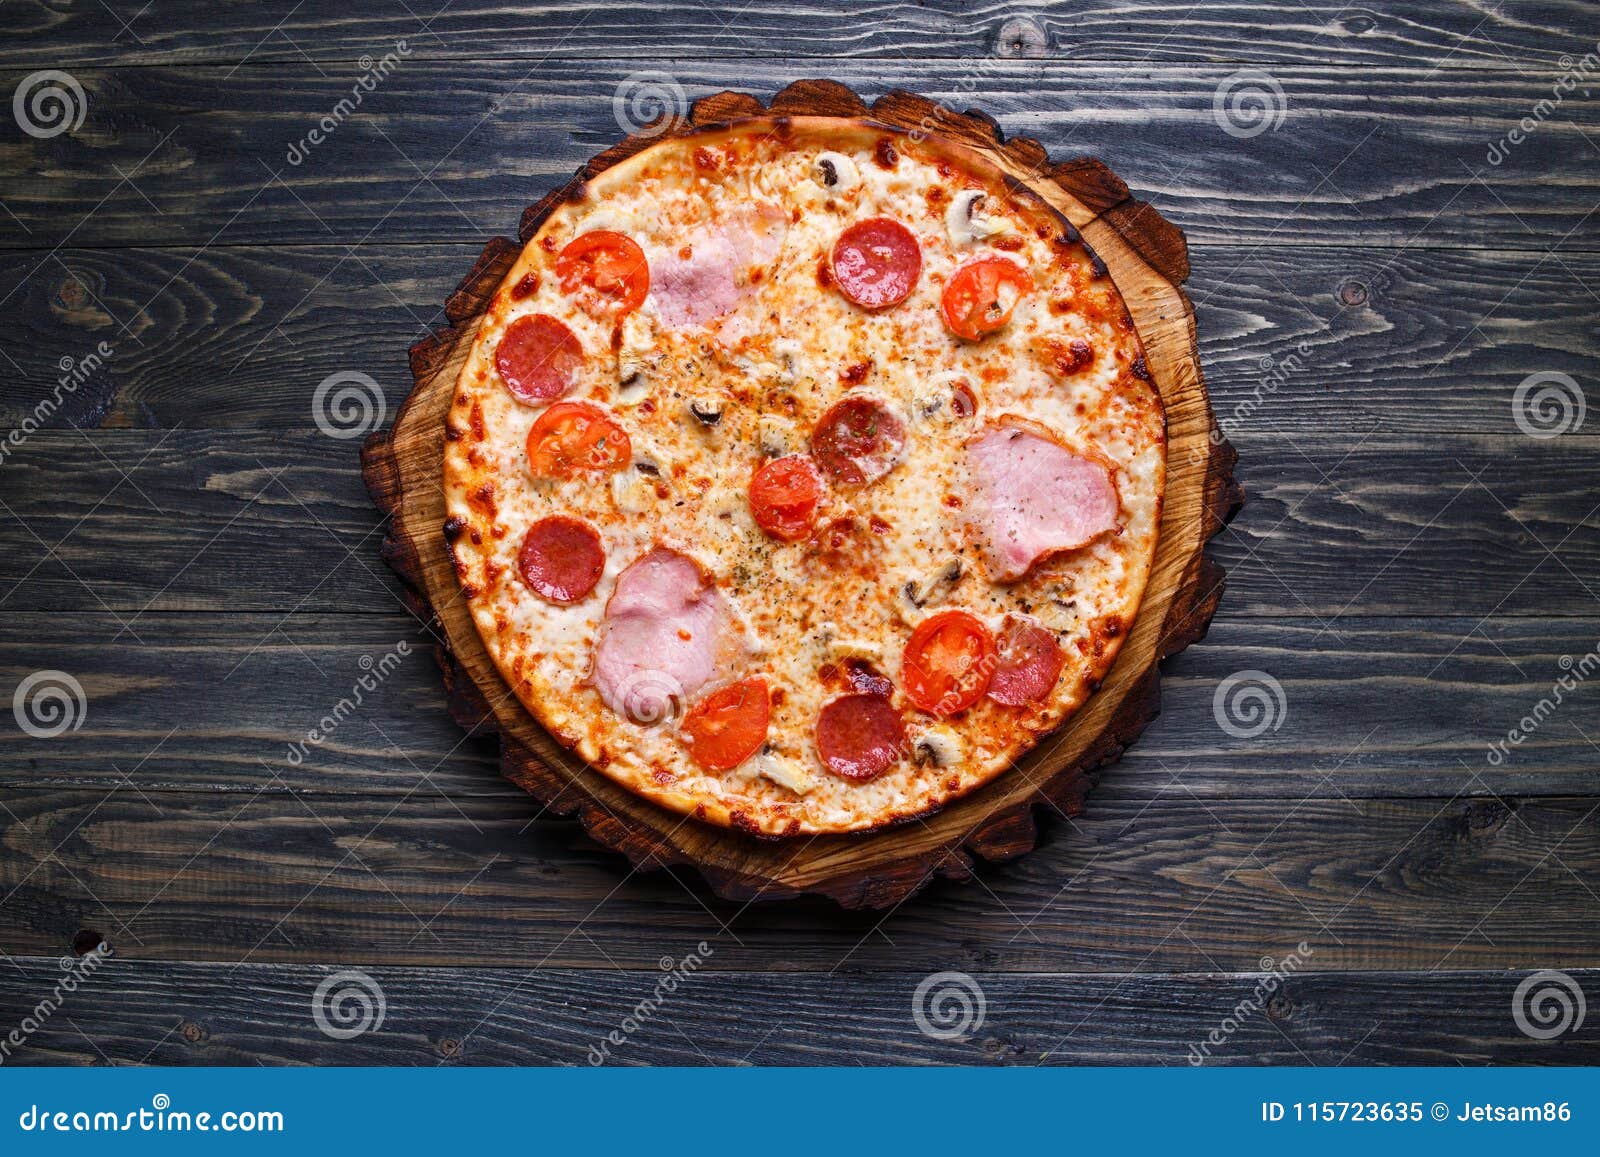 космическое питание сицилийская пицца фото 32